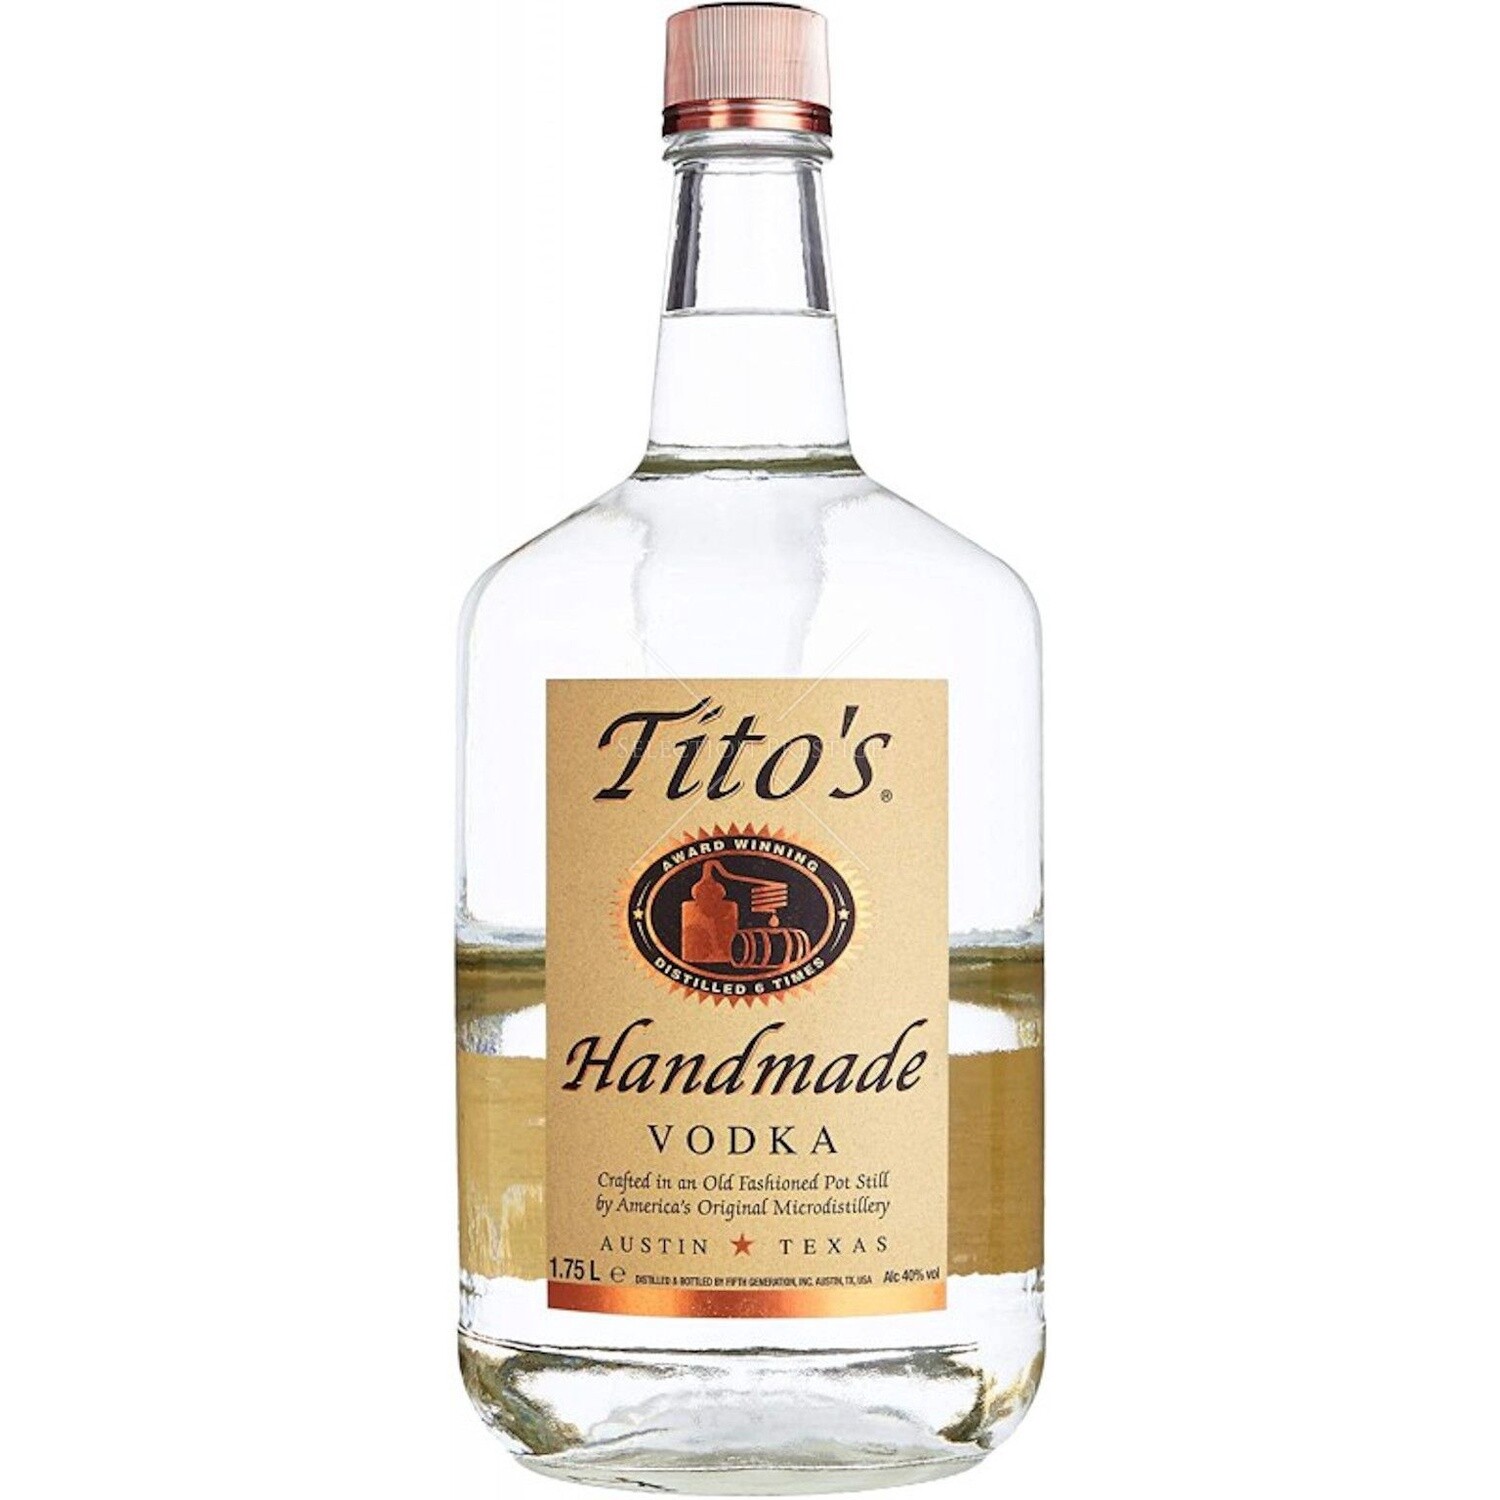 Titos Vodka (1.75L)